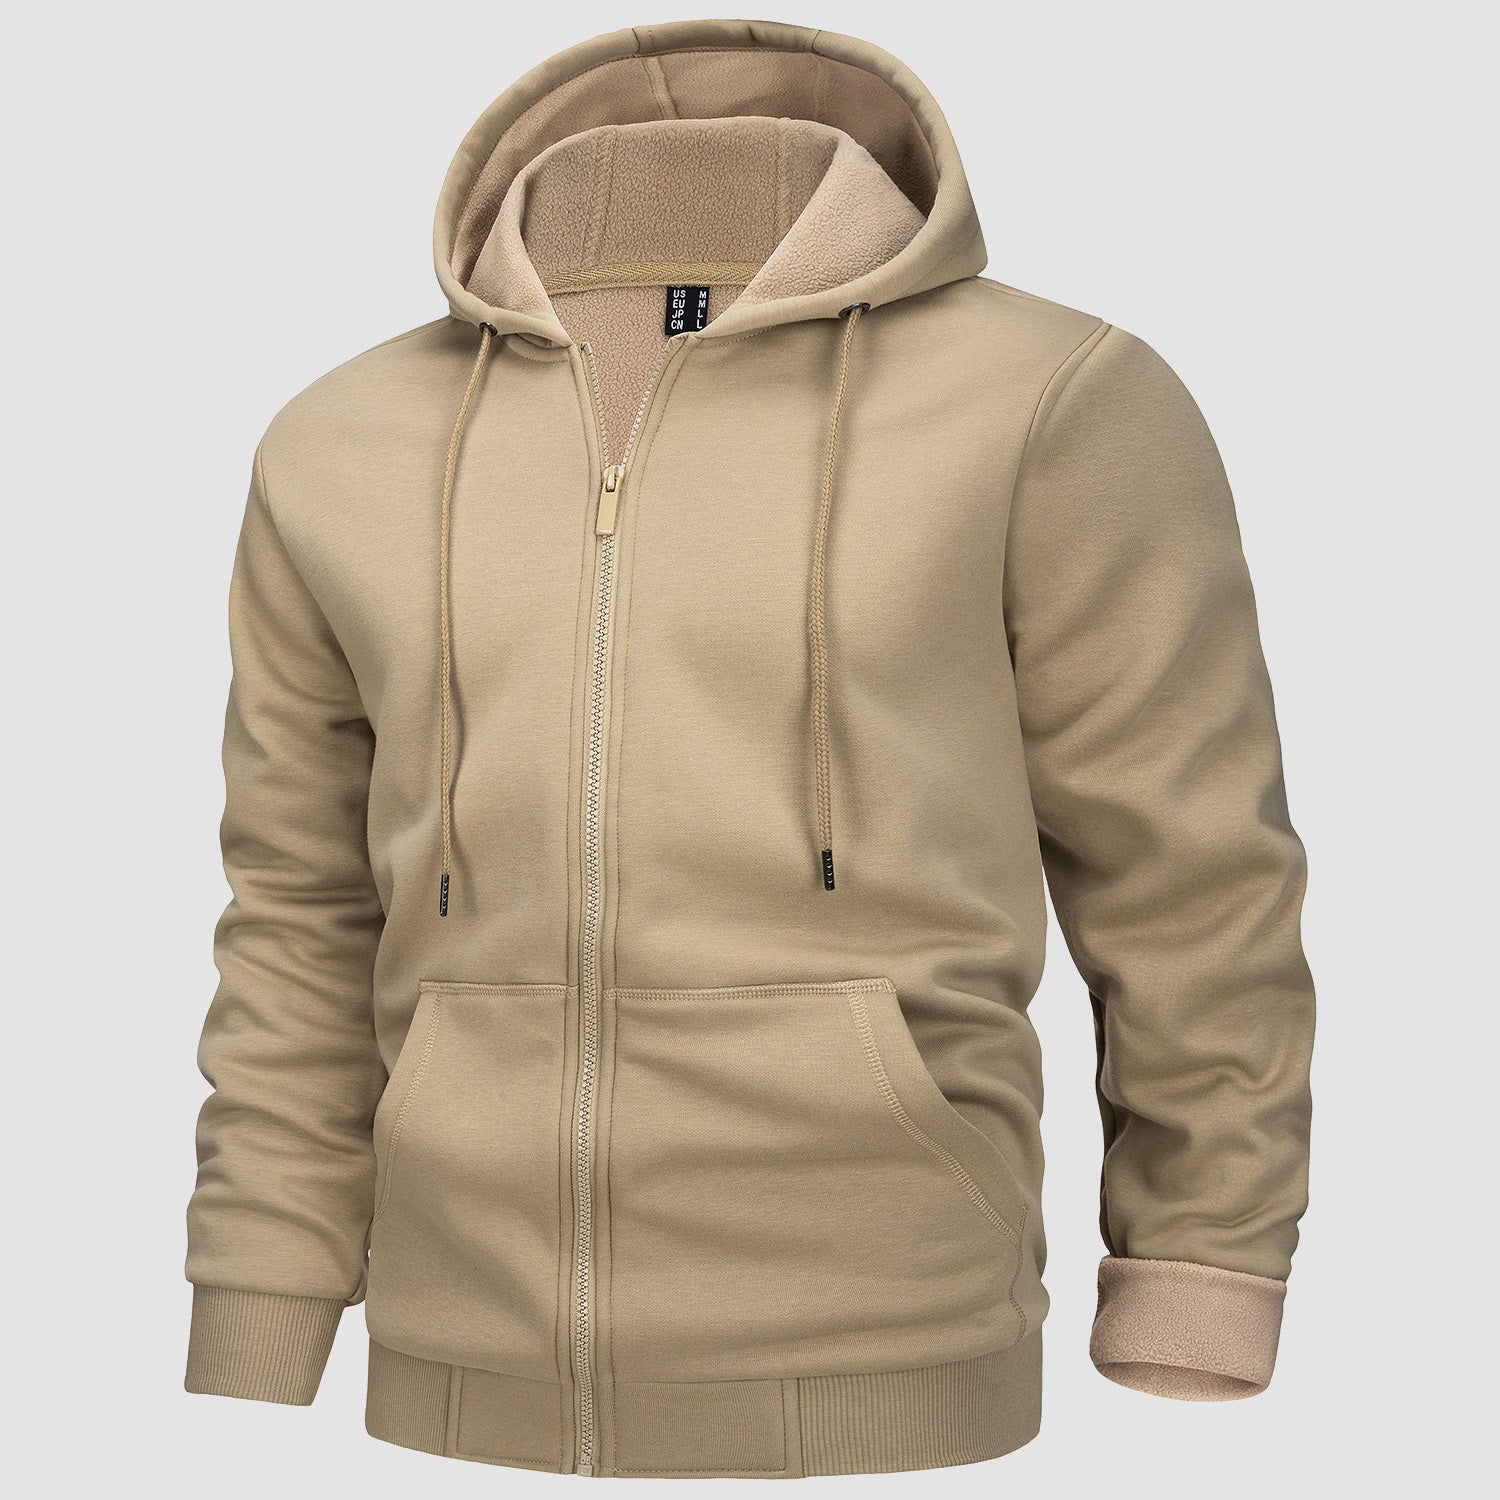 Men's Hoodie Jacket  Fleeces Zip Up Sweatshirt